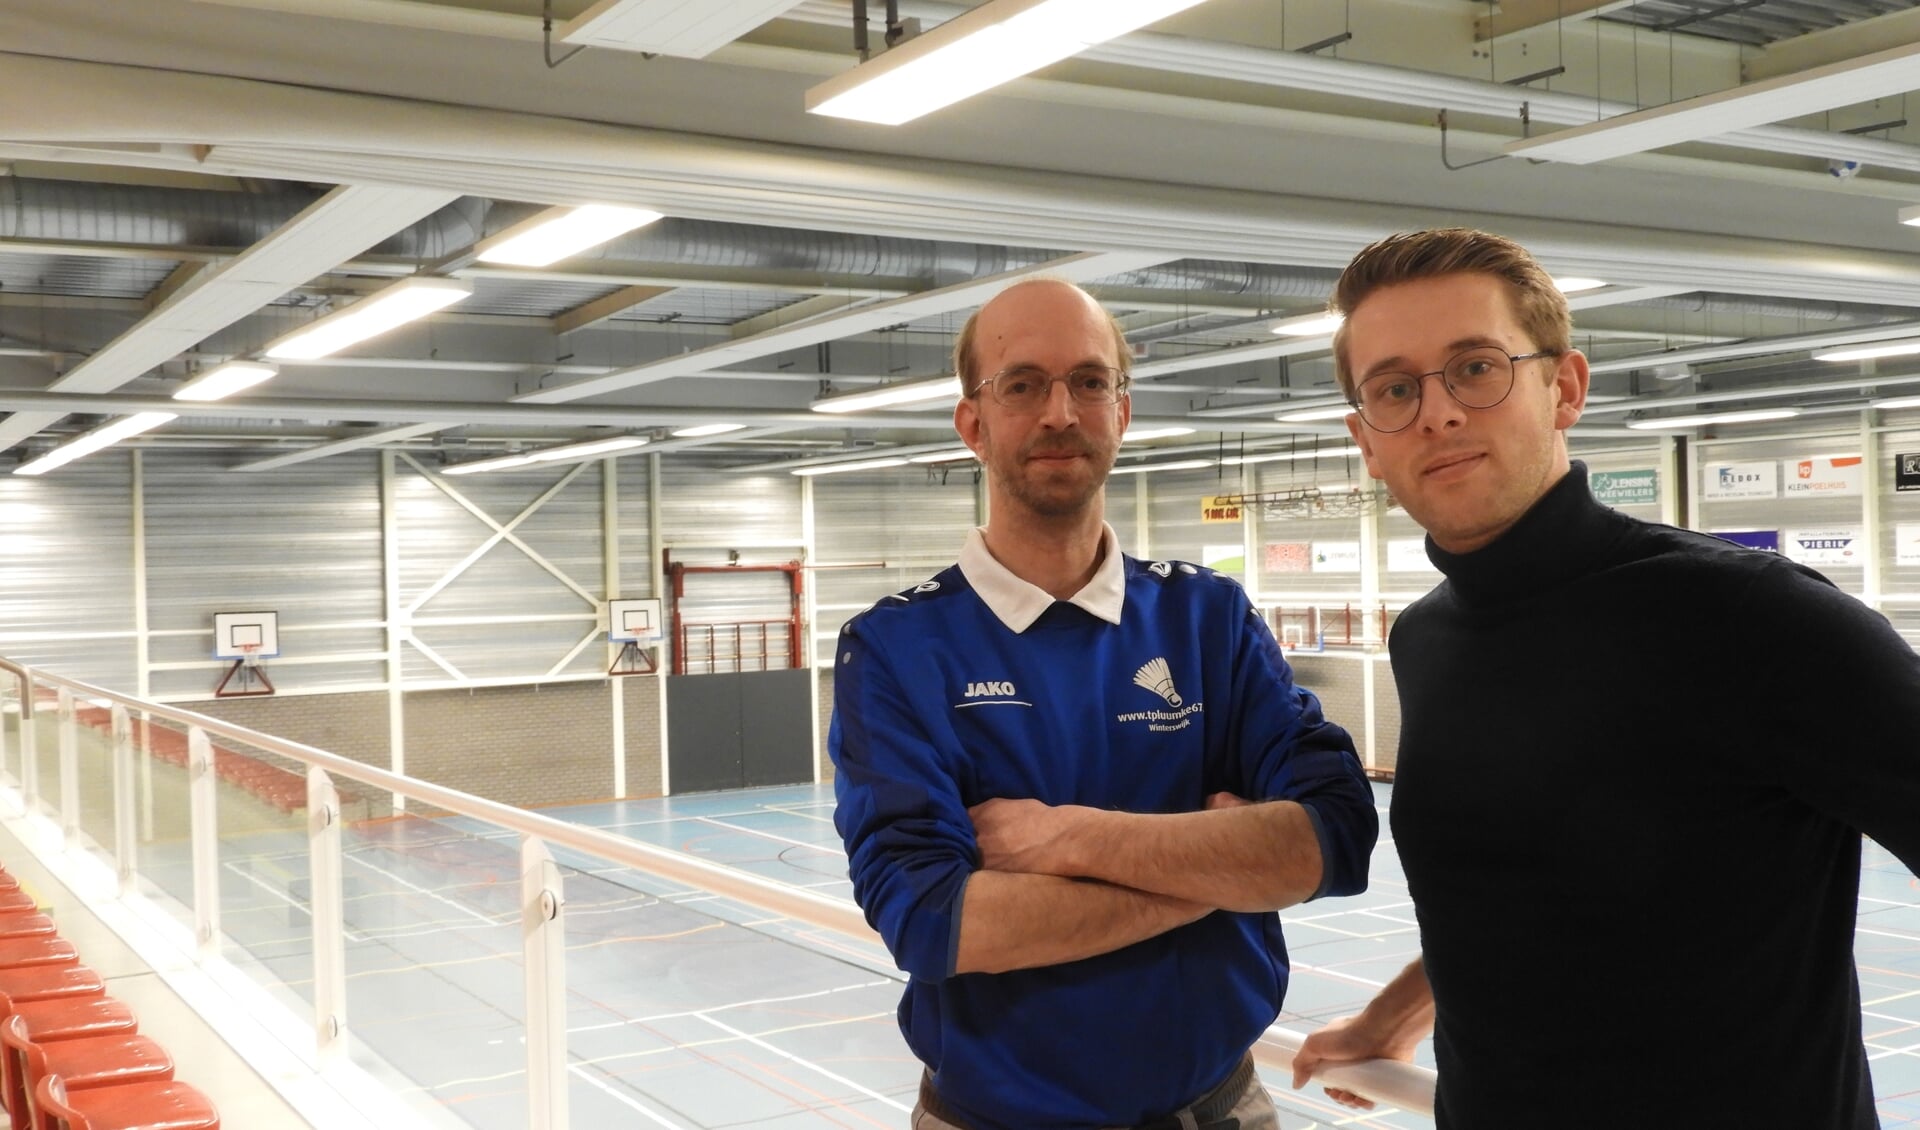 Organisatoren Erwin Ruesink links en Mark ten Pas in de Sport- en turnhal waar het toernooi plaatsvindt. Foto: PR 